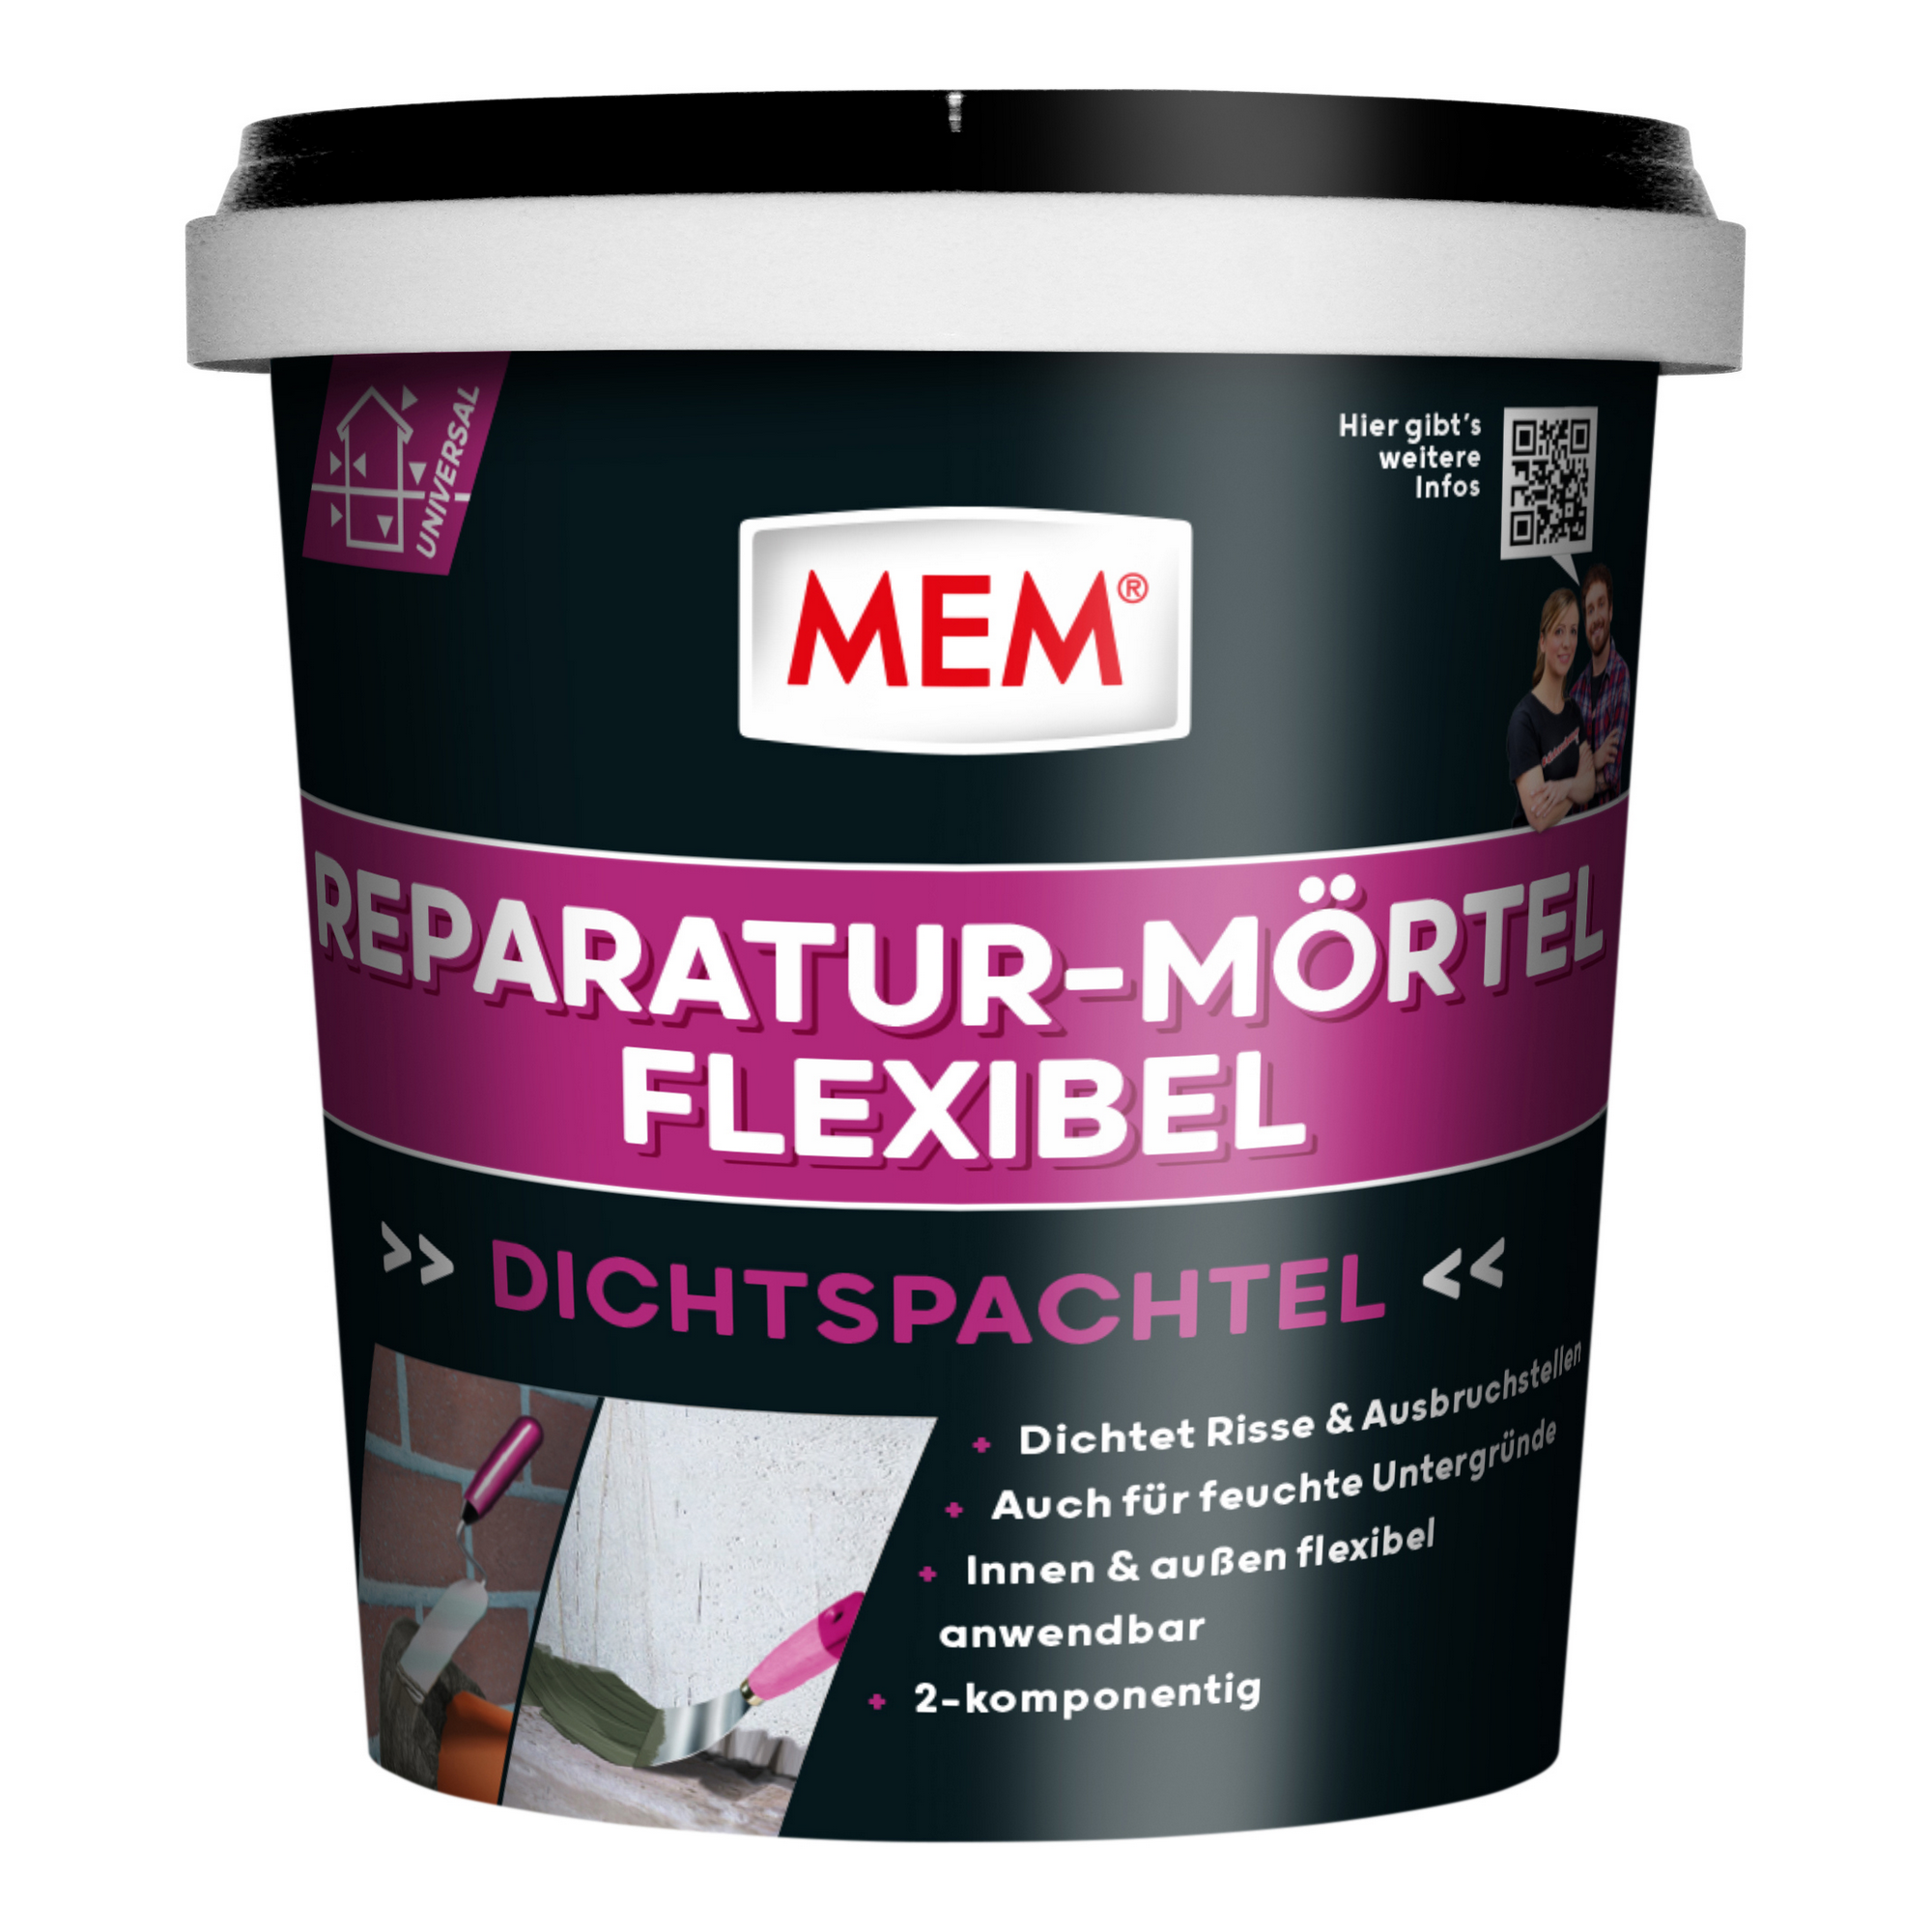 Reparatur-Mörtel 'Flexibel' 1 kg + product picture